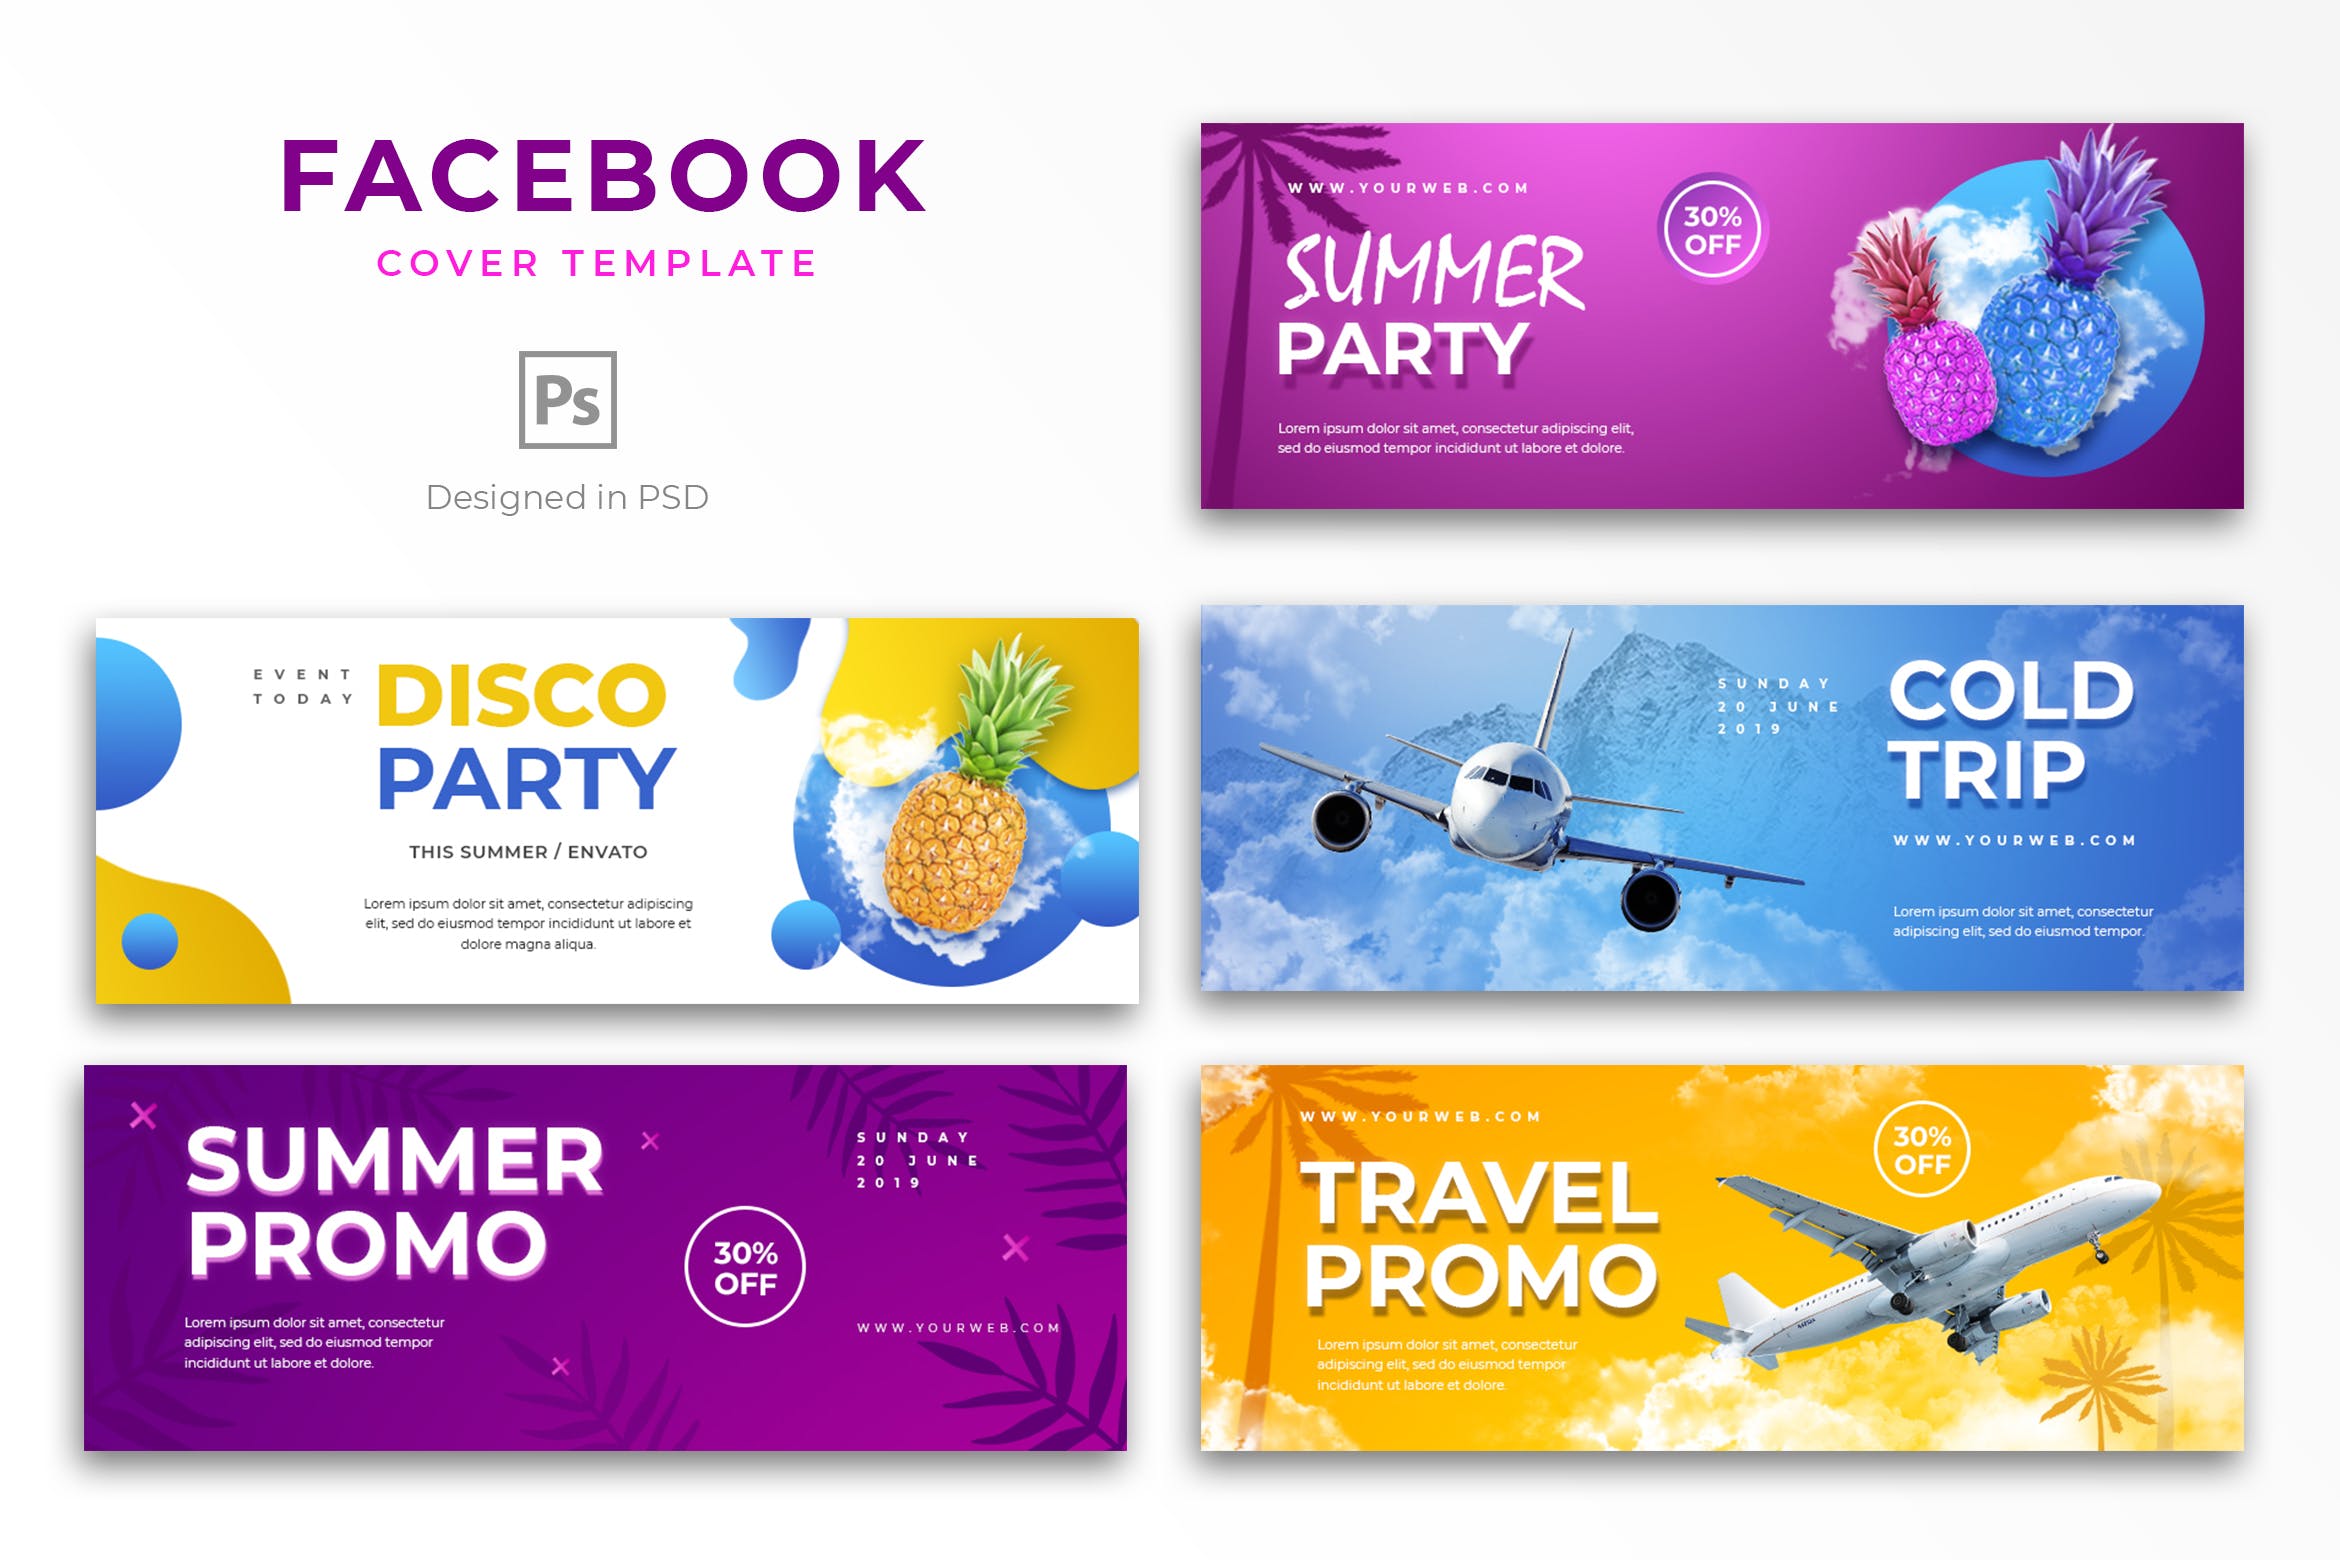 夏天主题活动推广Facebook主页封面设计模板第一素材精选 Summer Facebook Cover Template插图